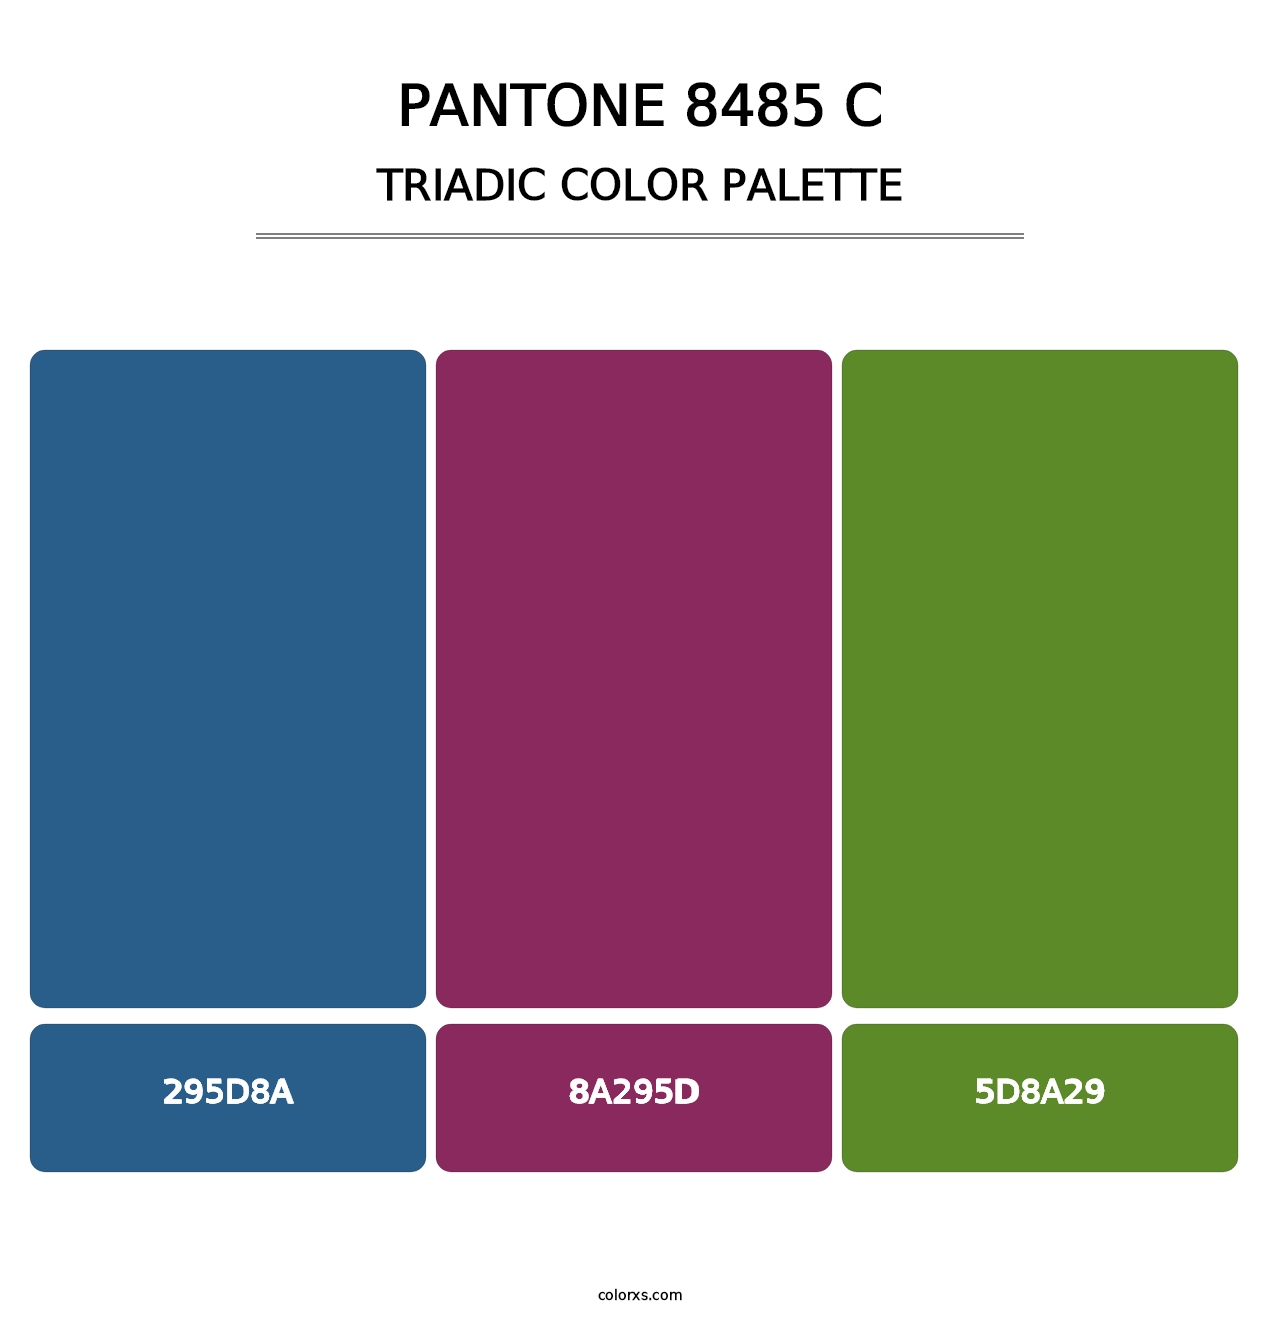 PANTONE 8485 C - Triadic Color Palette